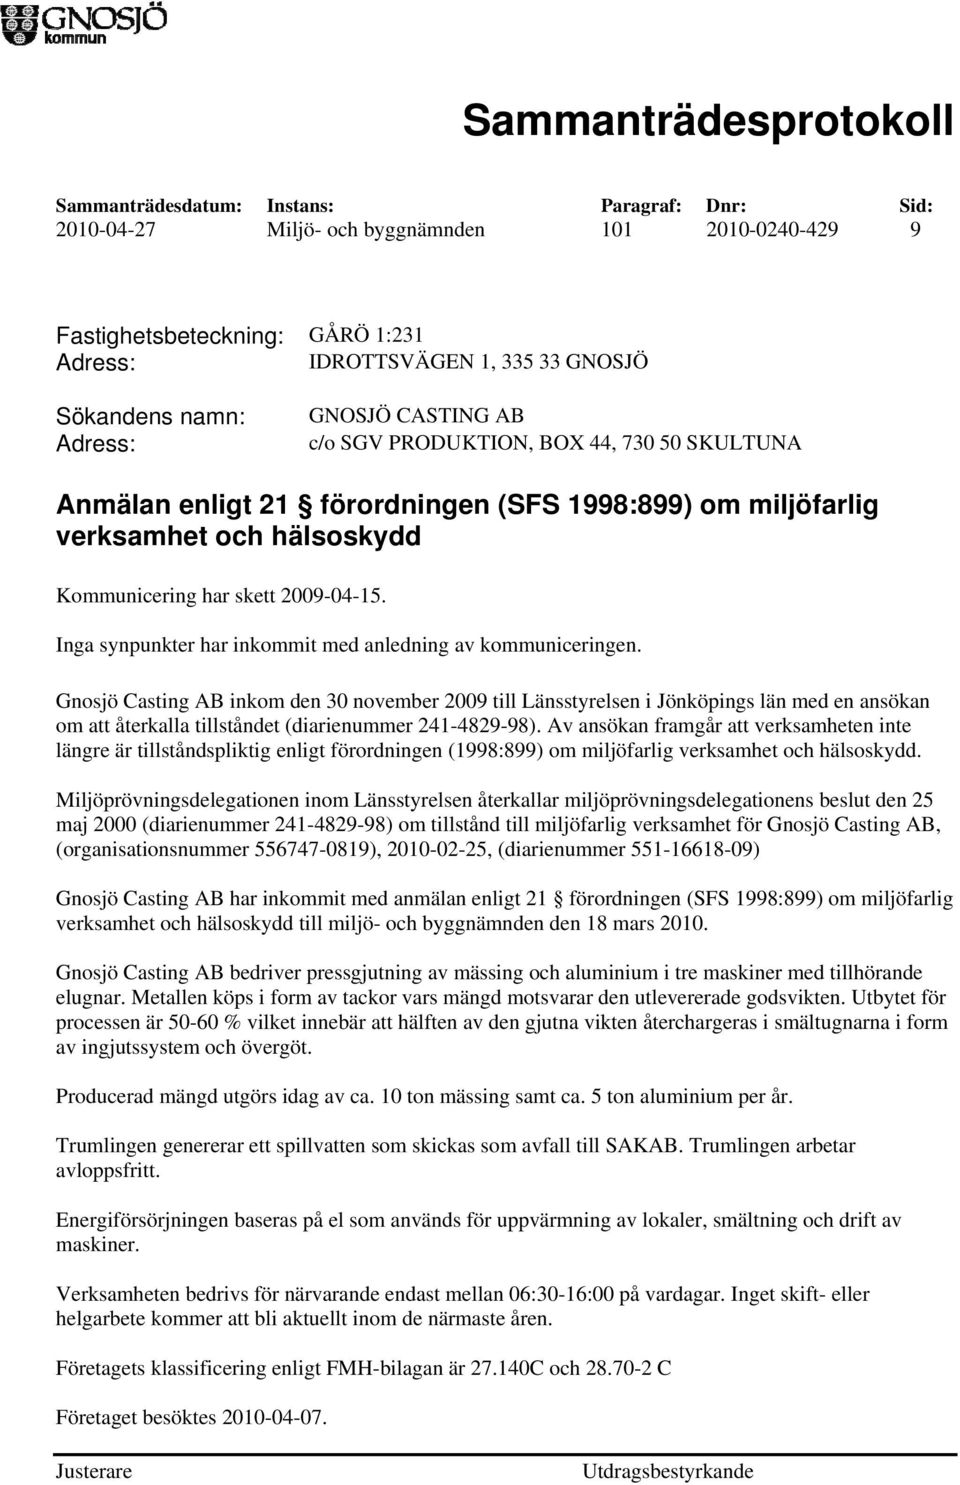 Gnosjö Casting AB inkom den 30 november 2009 till Länsstyrelsen i Jönköpings län med en ansökan om att återkalla tillståndet (diarienummer 241-4829-98).